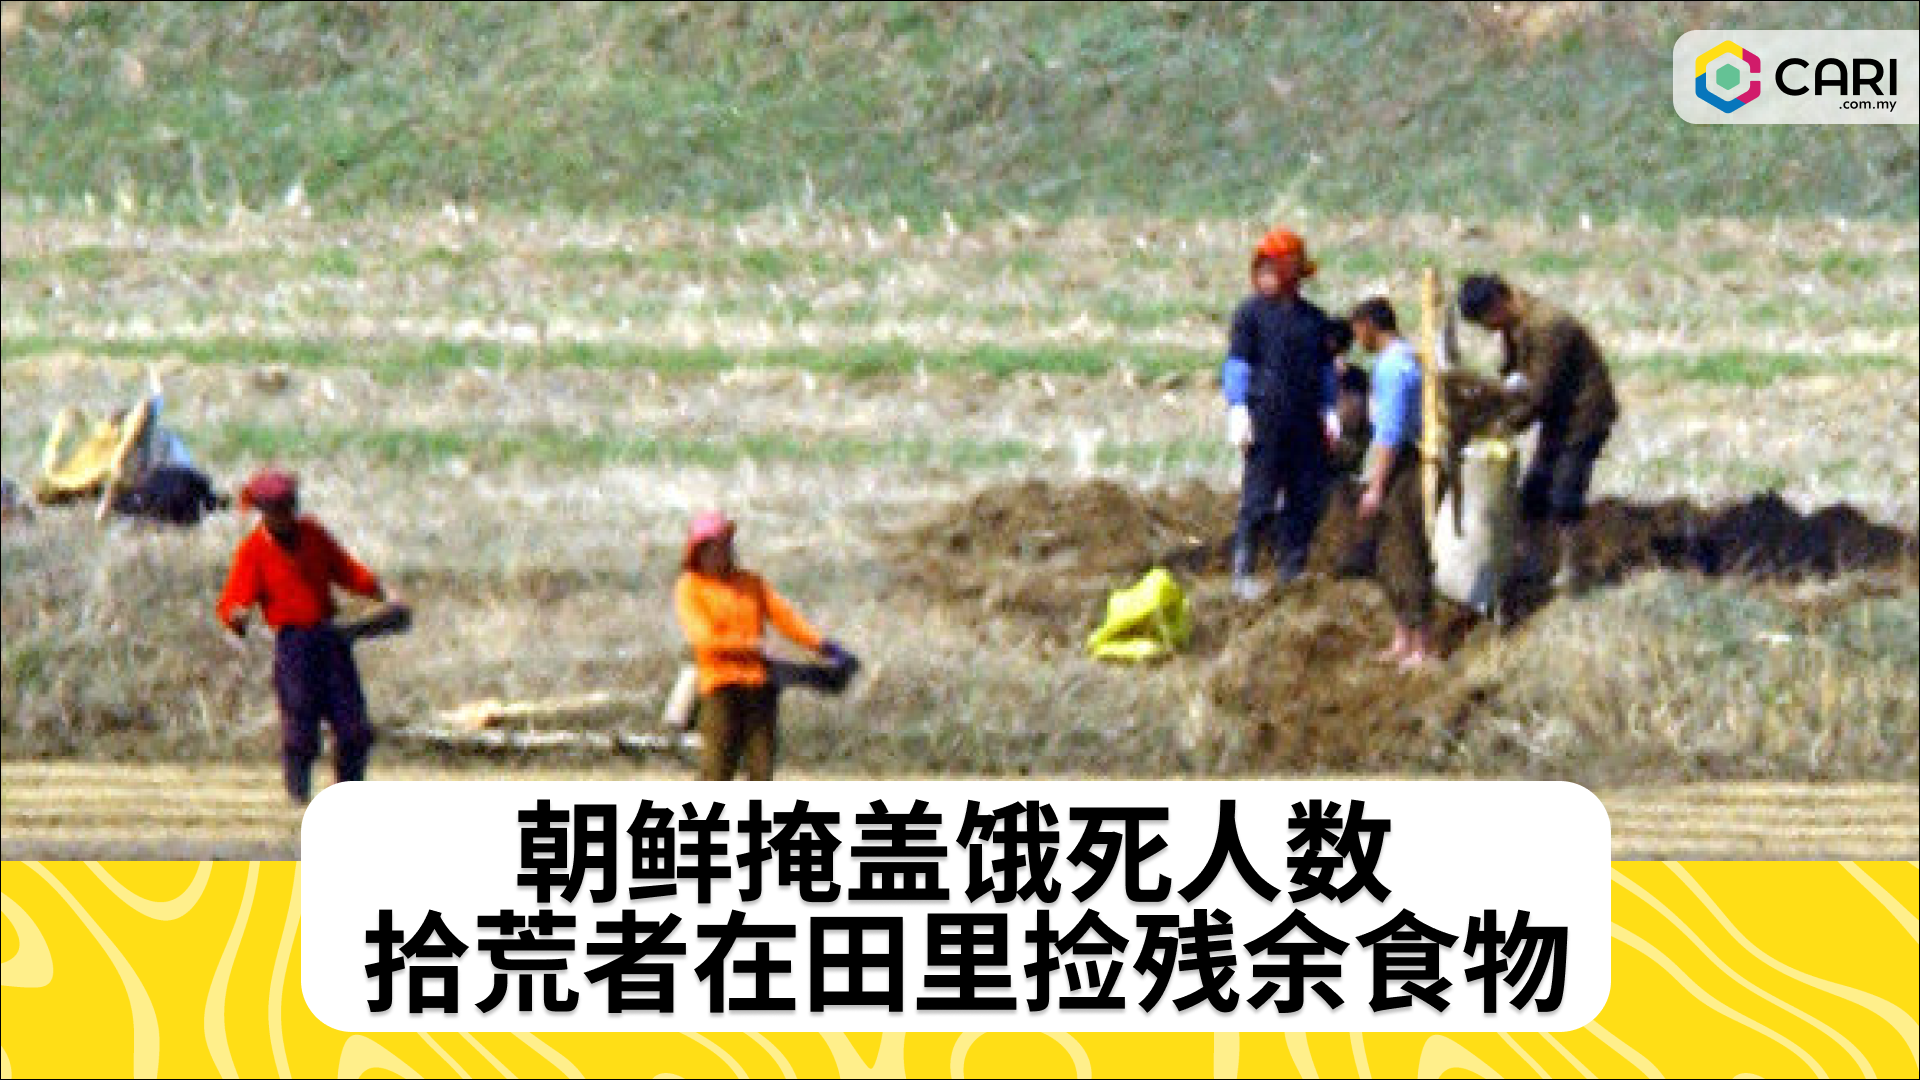 朝鲜掩盖饿死人数 拾荒者在田里捡残余食物